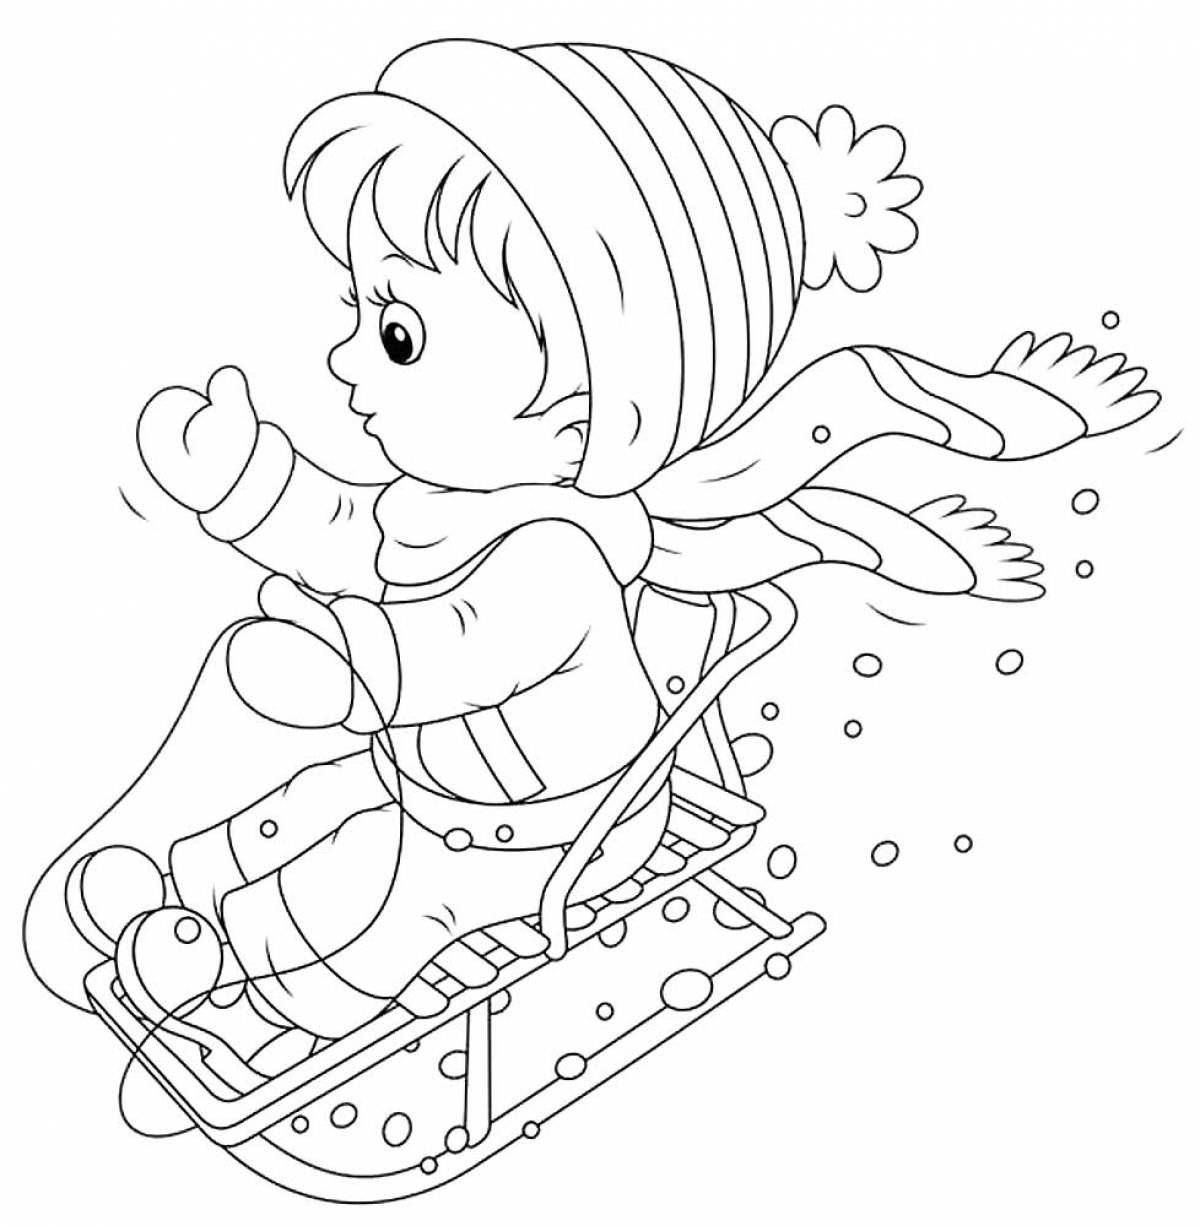 Boy on sled